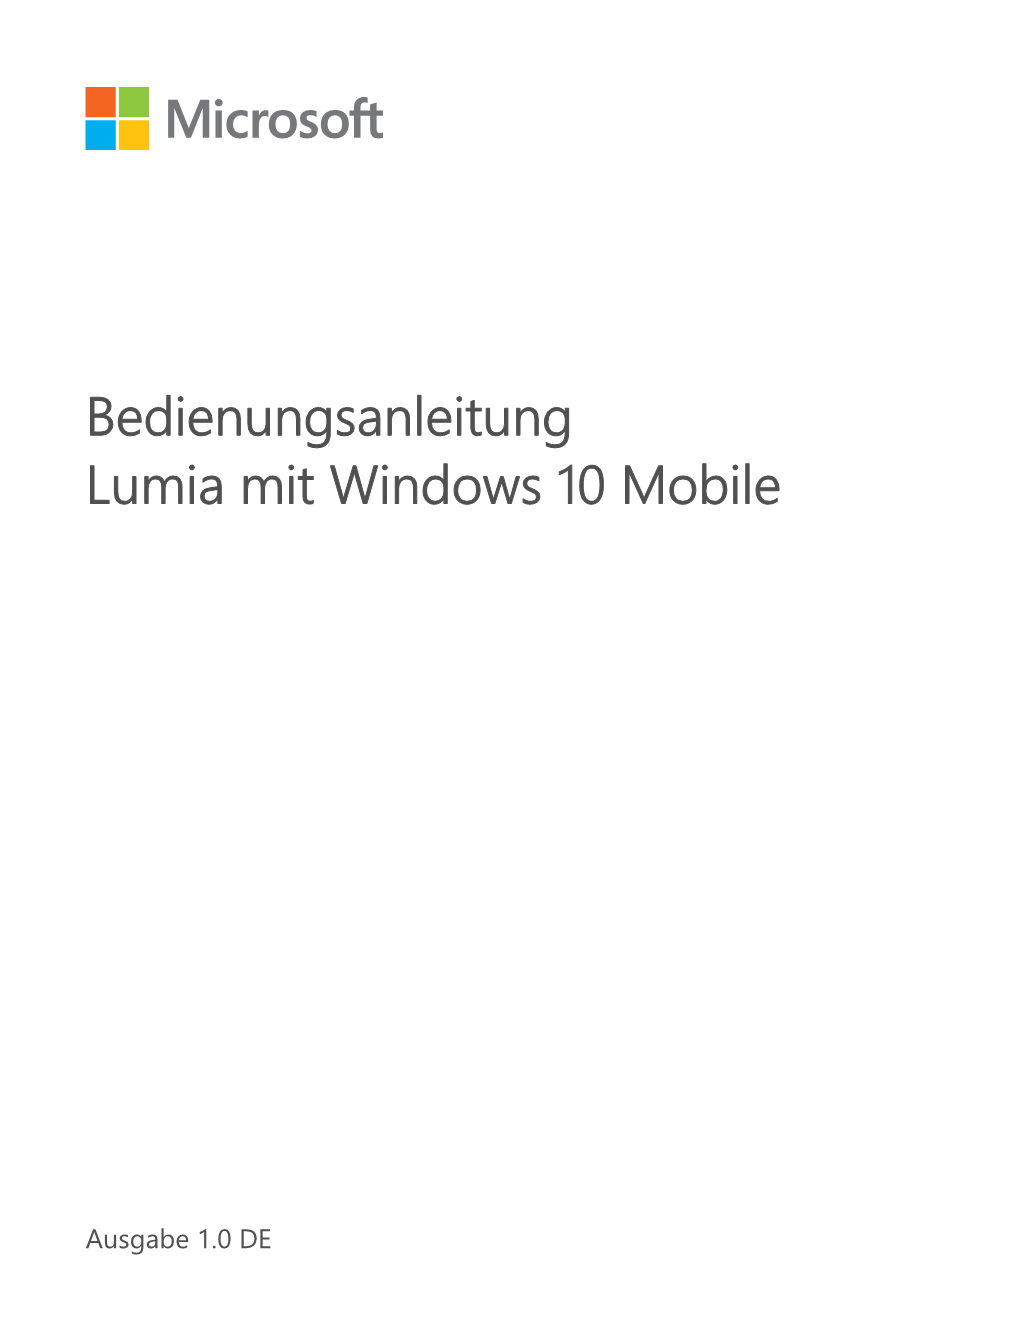 Bedienungsanleitung Microsoft Lumia